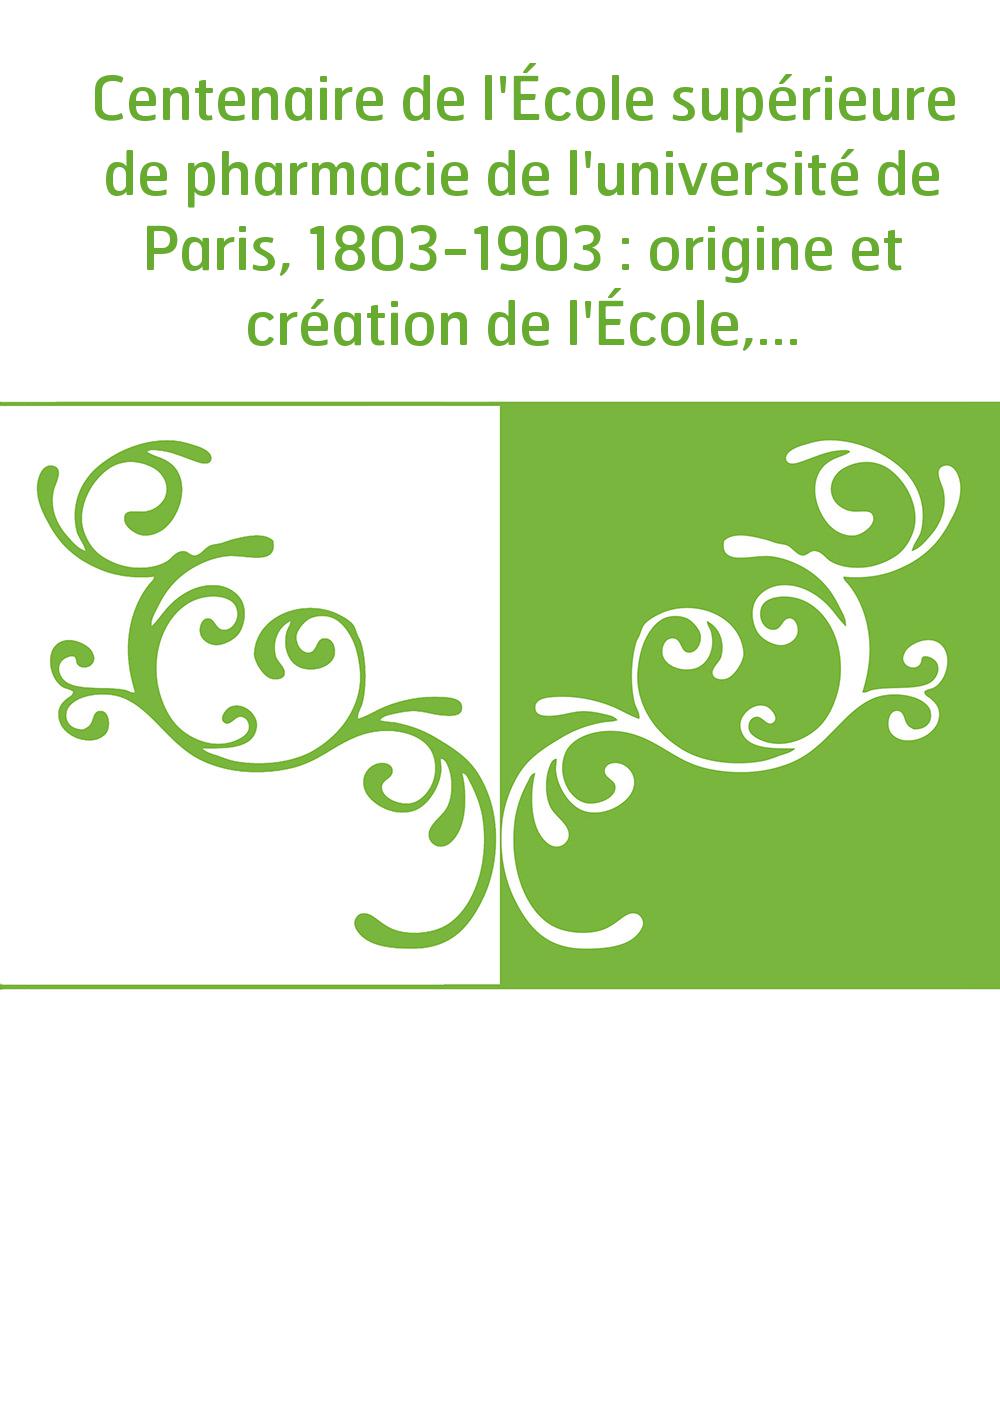 Centenaire de l'École supérieure de pharmacie de l'université de Paris, 1803-1903 : origine et création de l'École, développemen